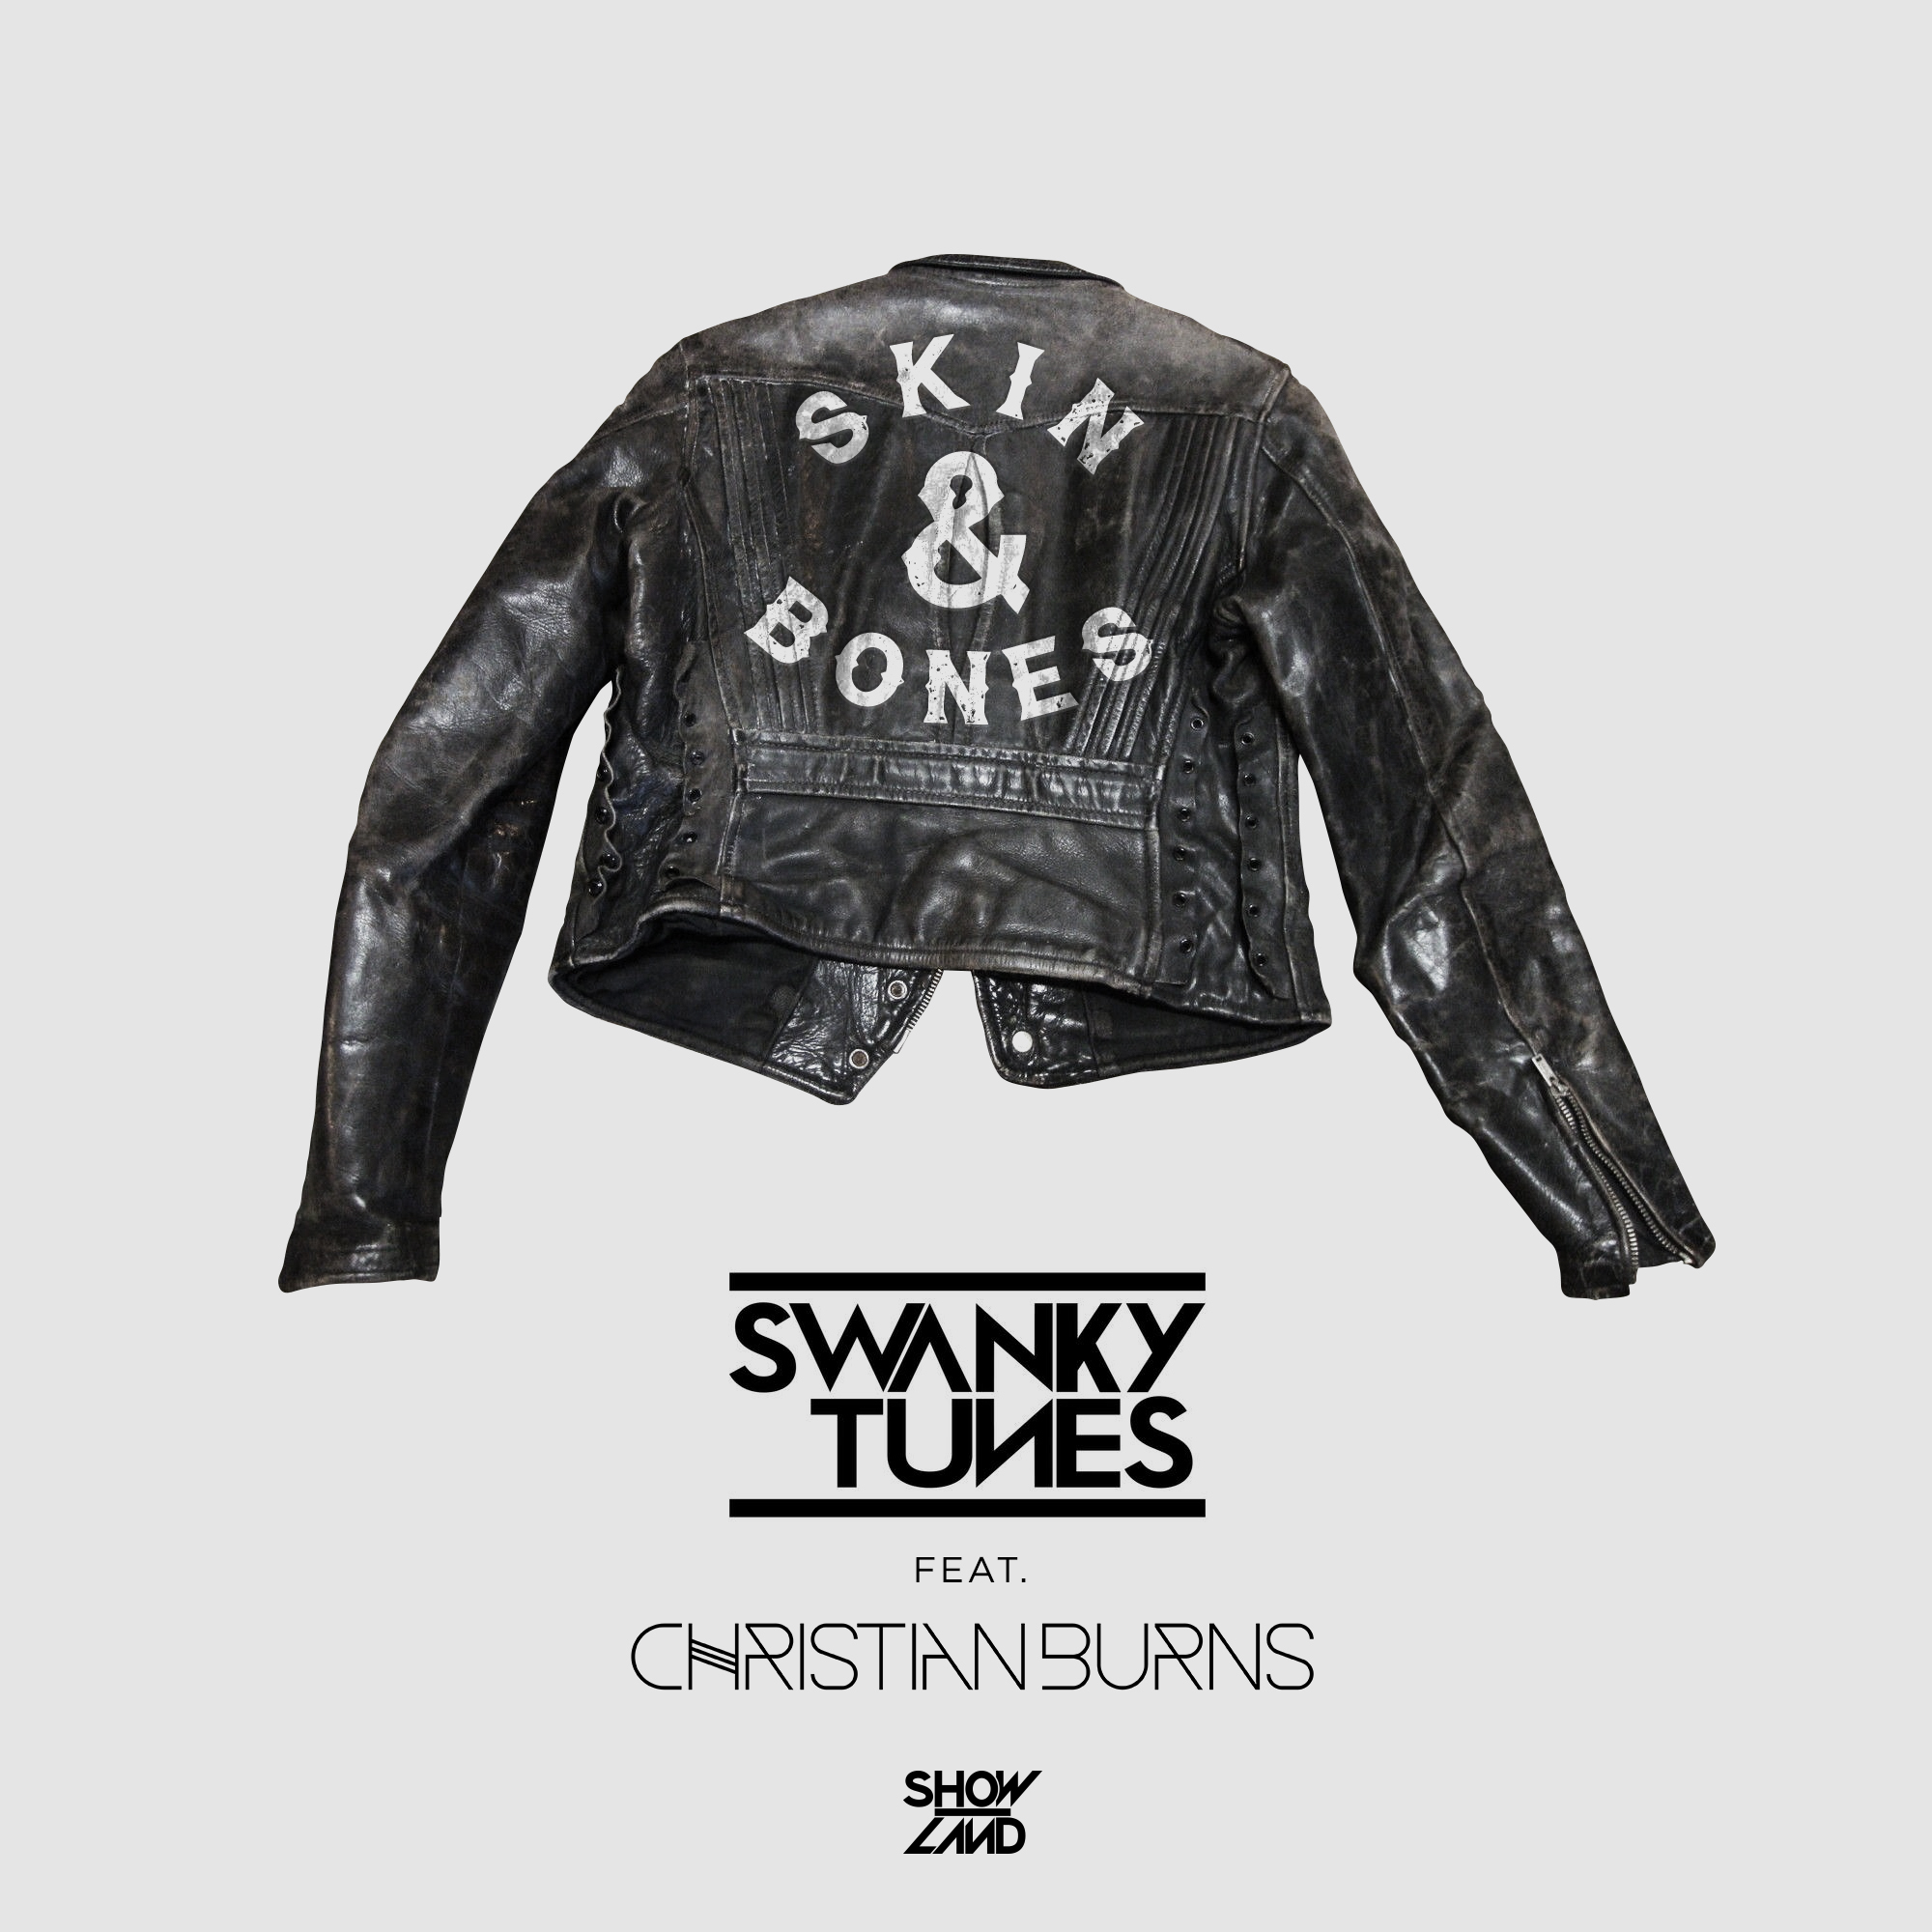 Swanky tunes go deeper. Skin & Bones Swanky Tunes & Christian Burns. Bones Swanky Tunes. Swanky Tunes ft. Christian Burns - Skin & Bones (Radio Edit). Skin and Bones одежда.